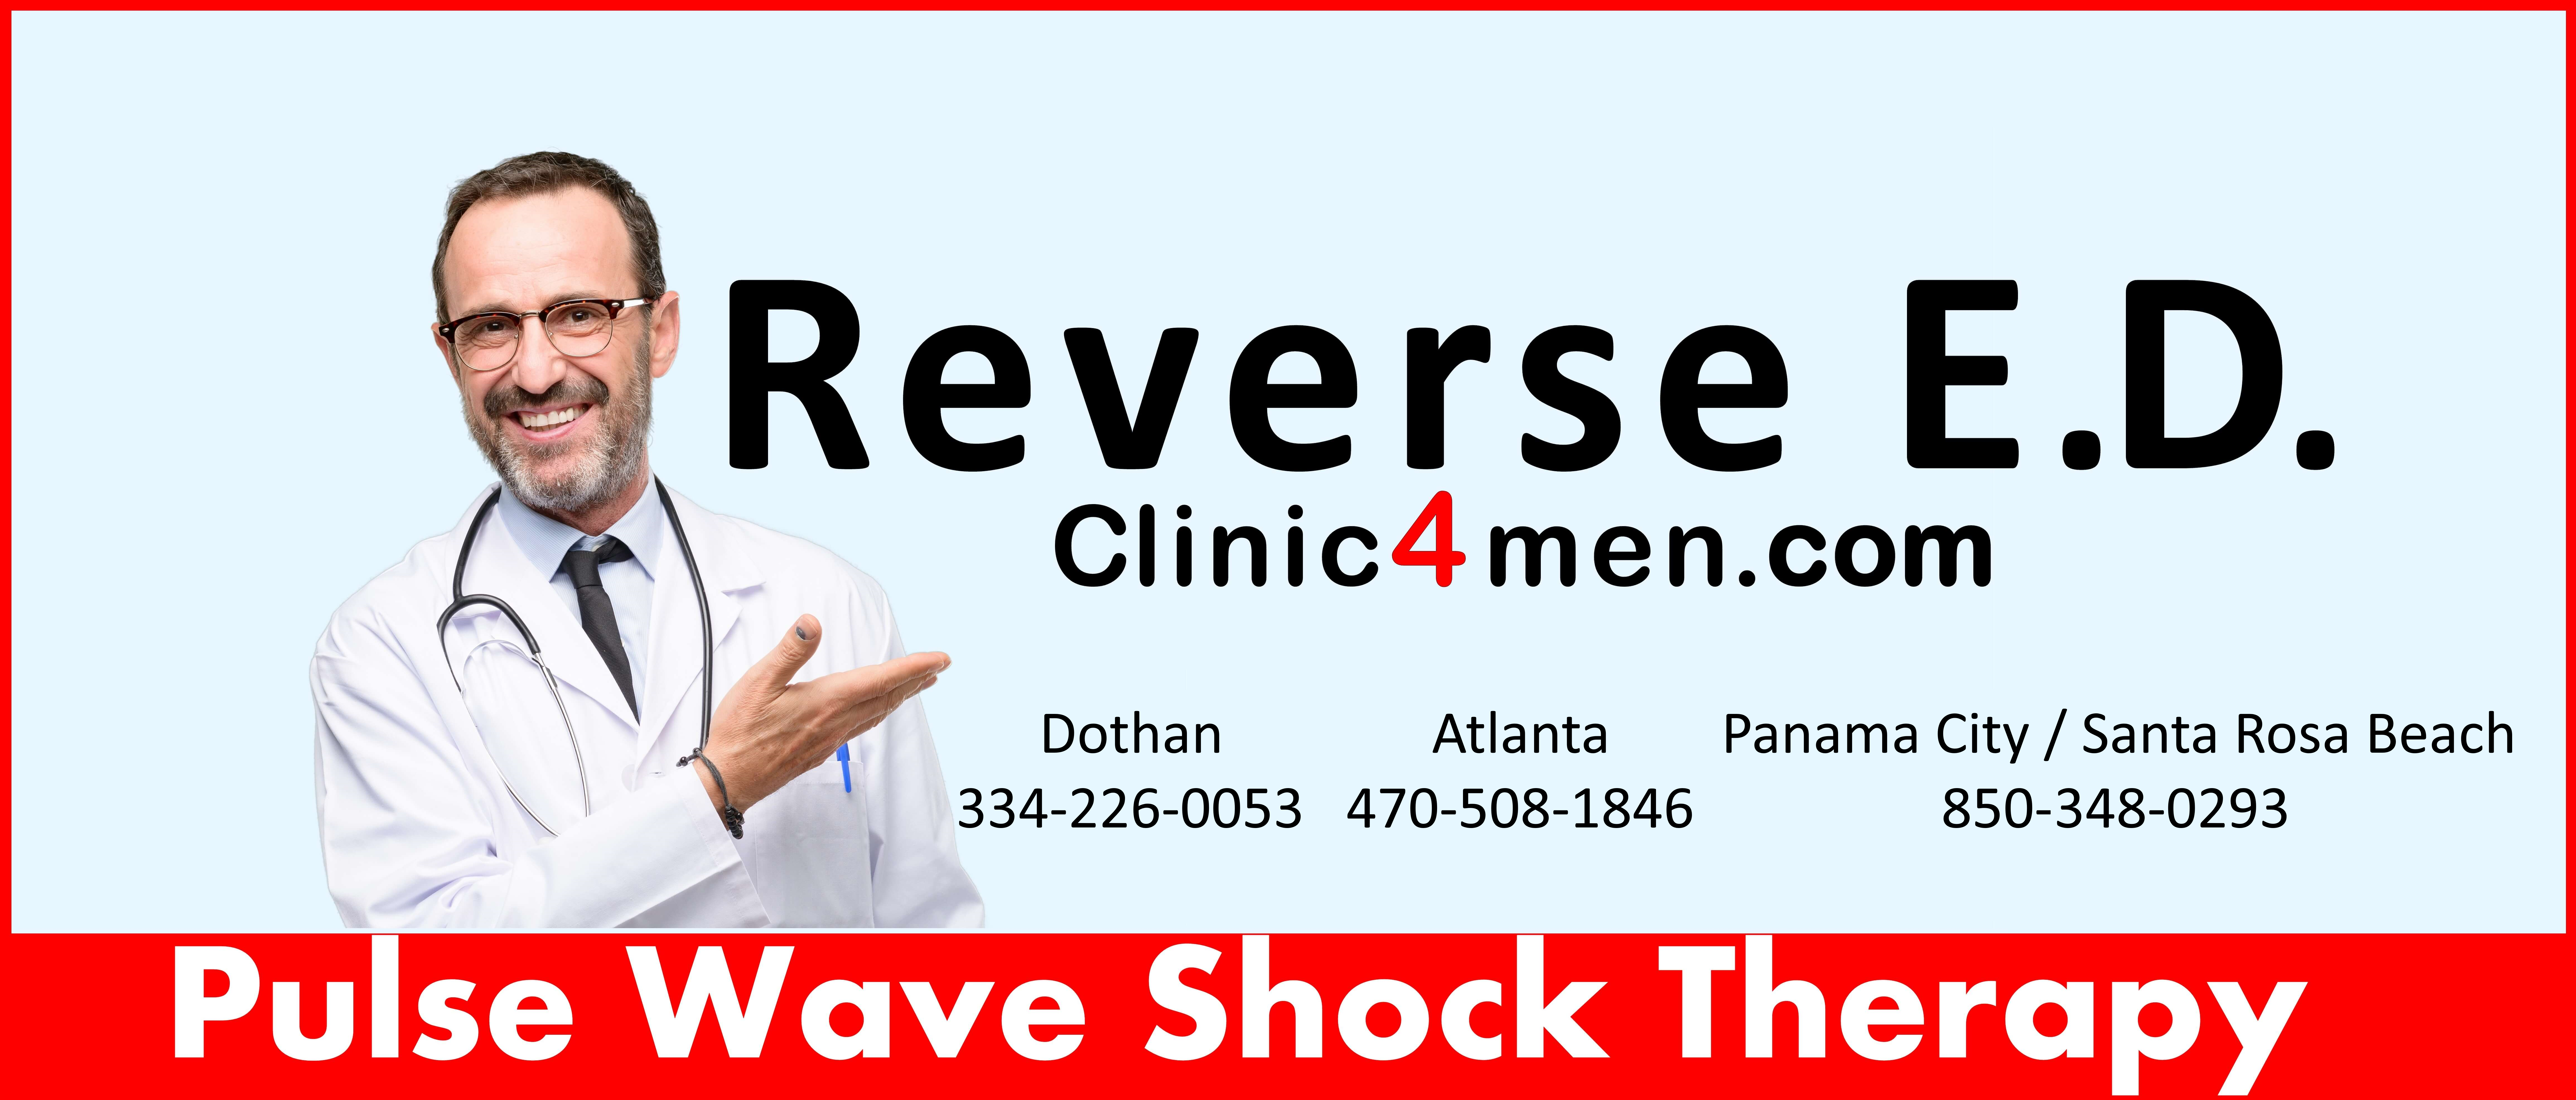 Reverse E.D. Clinic4Men.com 334-226-0053